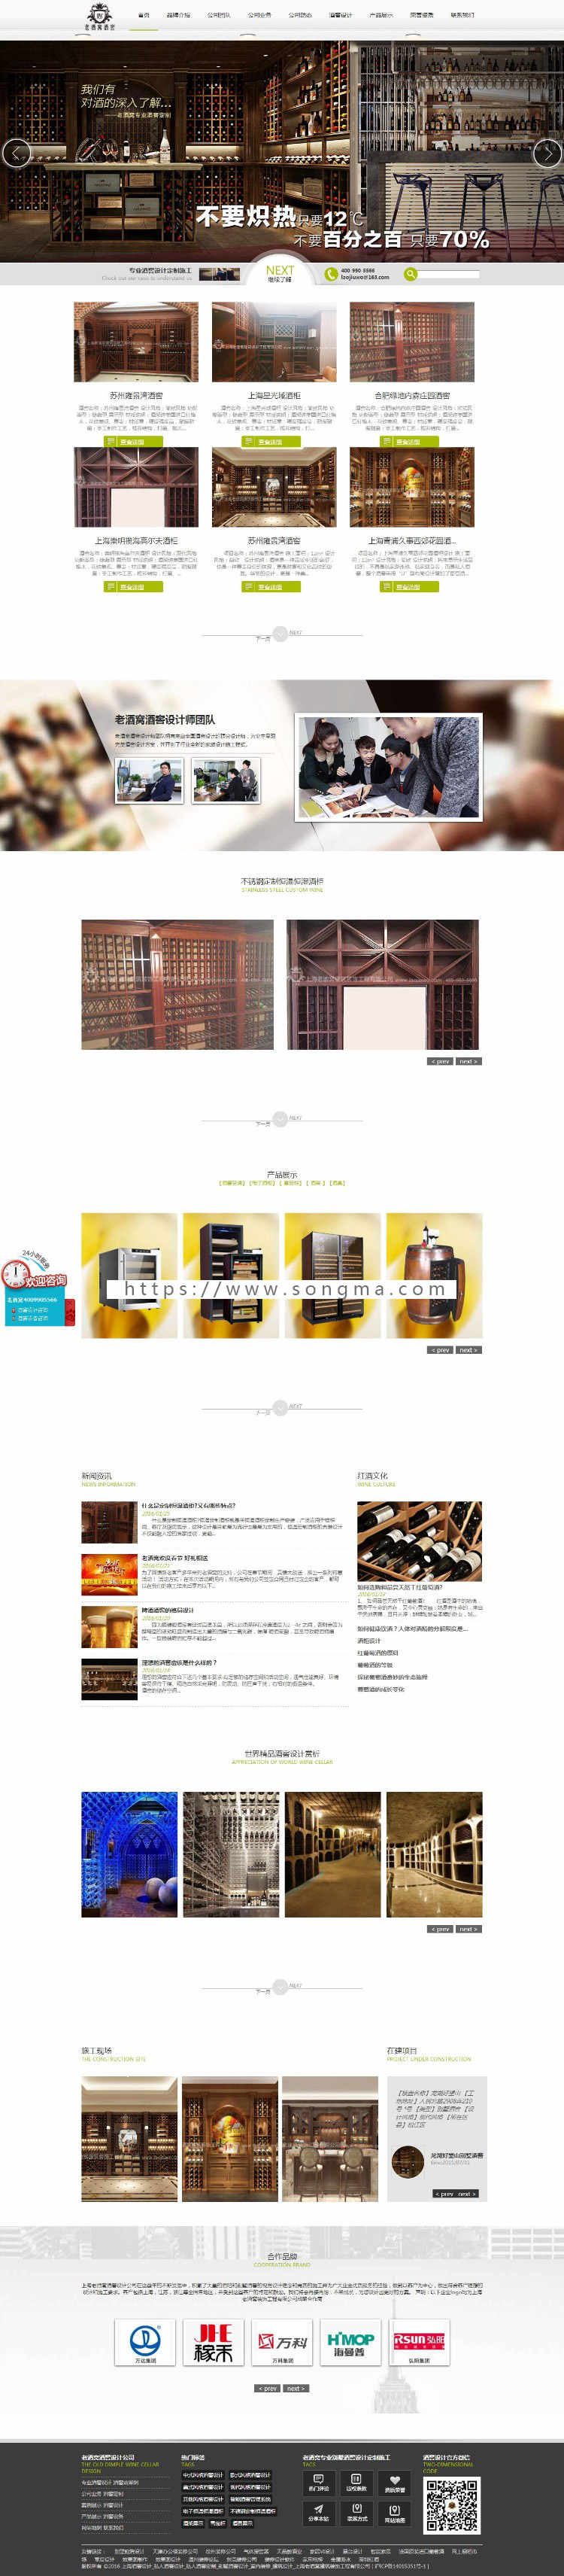 酒窖酒庄产品展示设计公司织梦模板源码